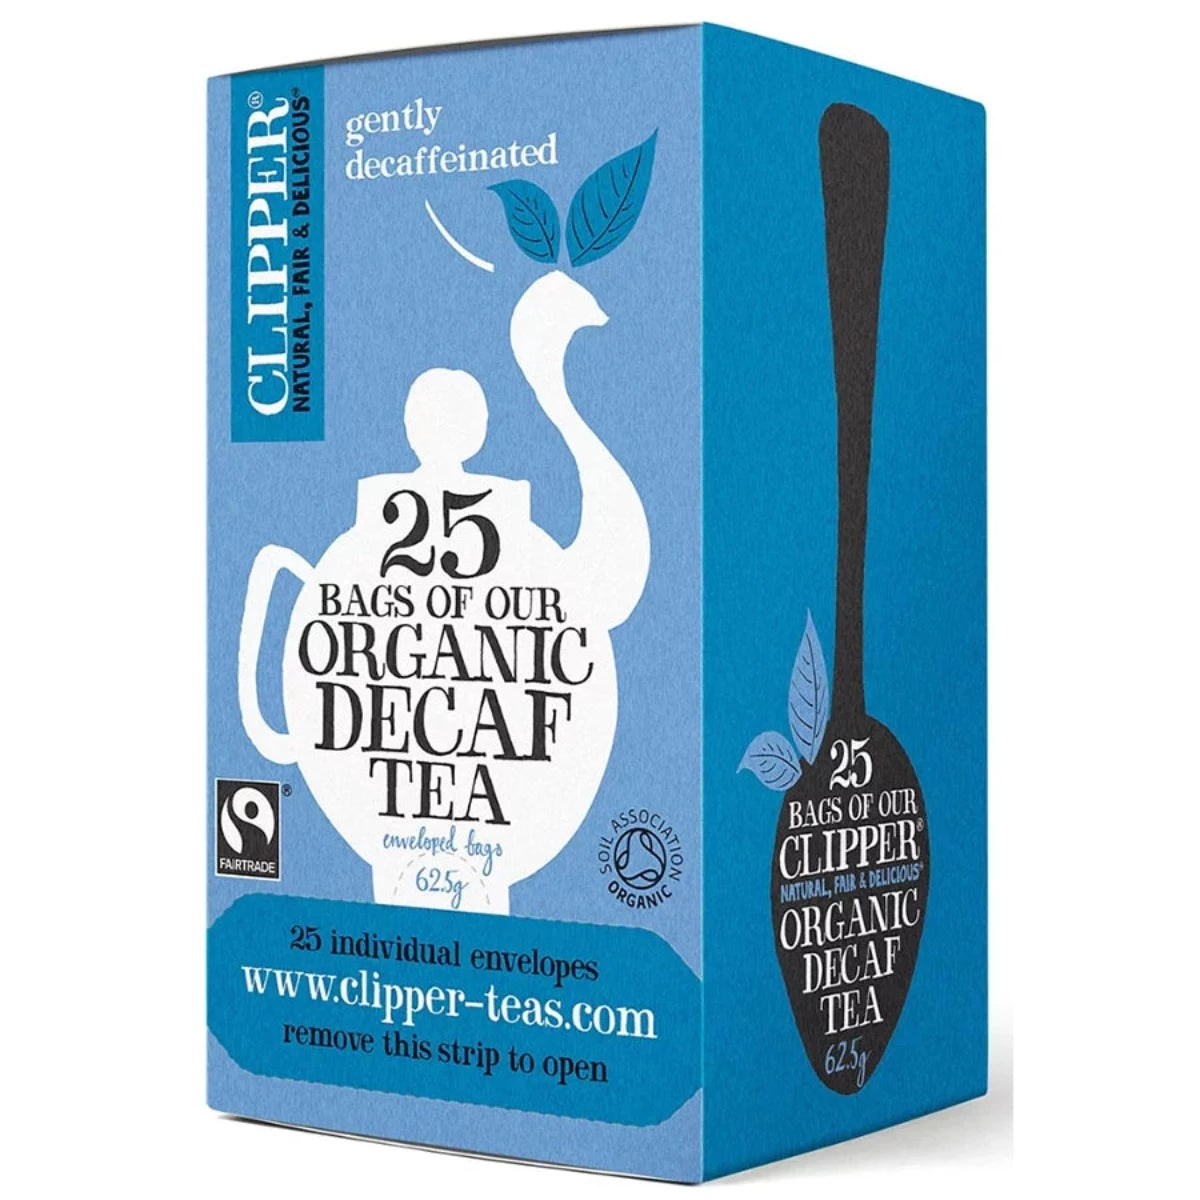 Clipper Organic Decaf Tea 25 bags